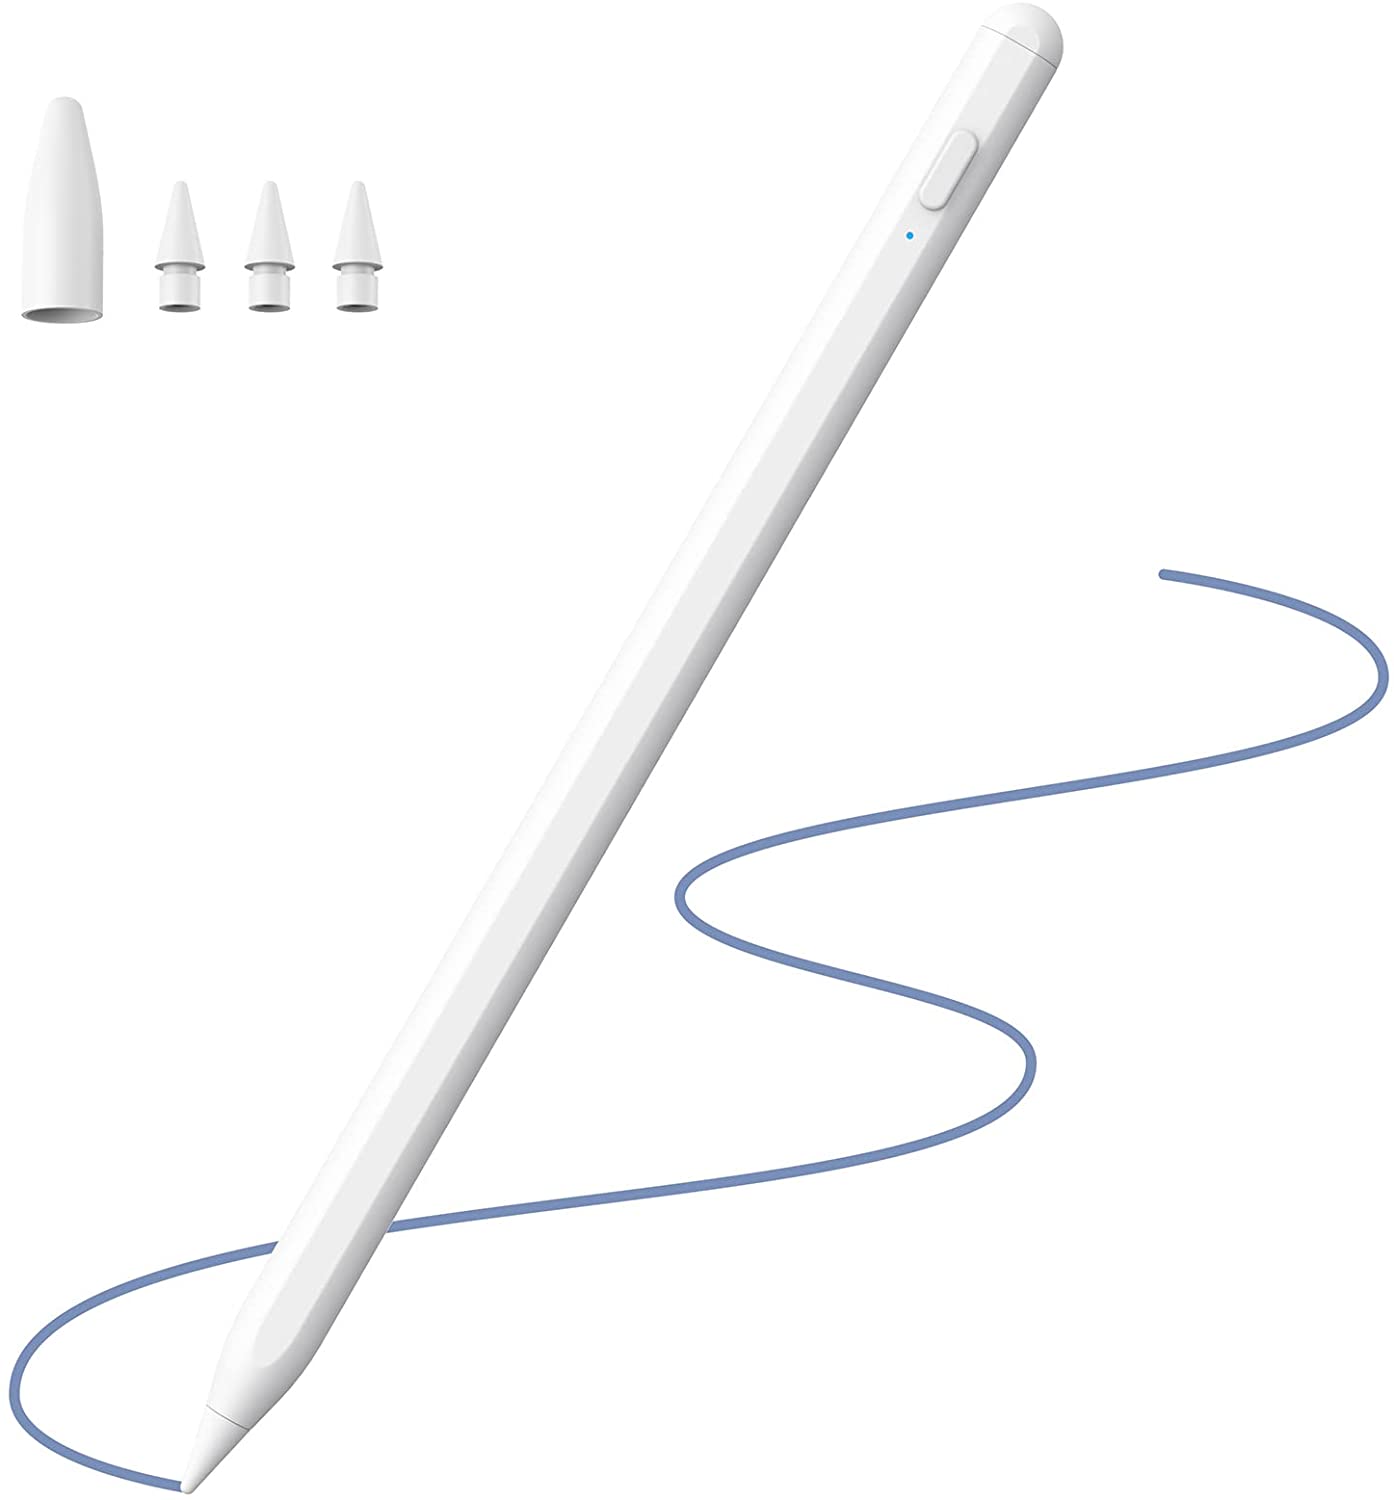 KECOW Penna Touch per iPad 2018-2021,Penna Stilo per Rifiuto del Palmo, Penna per iPad con 2 Punte, Penna Tattile con Funzione di Rilevamento dell'Inclinazione